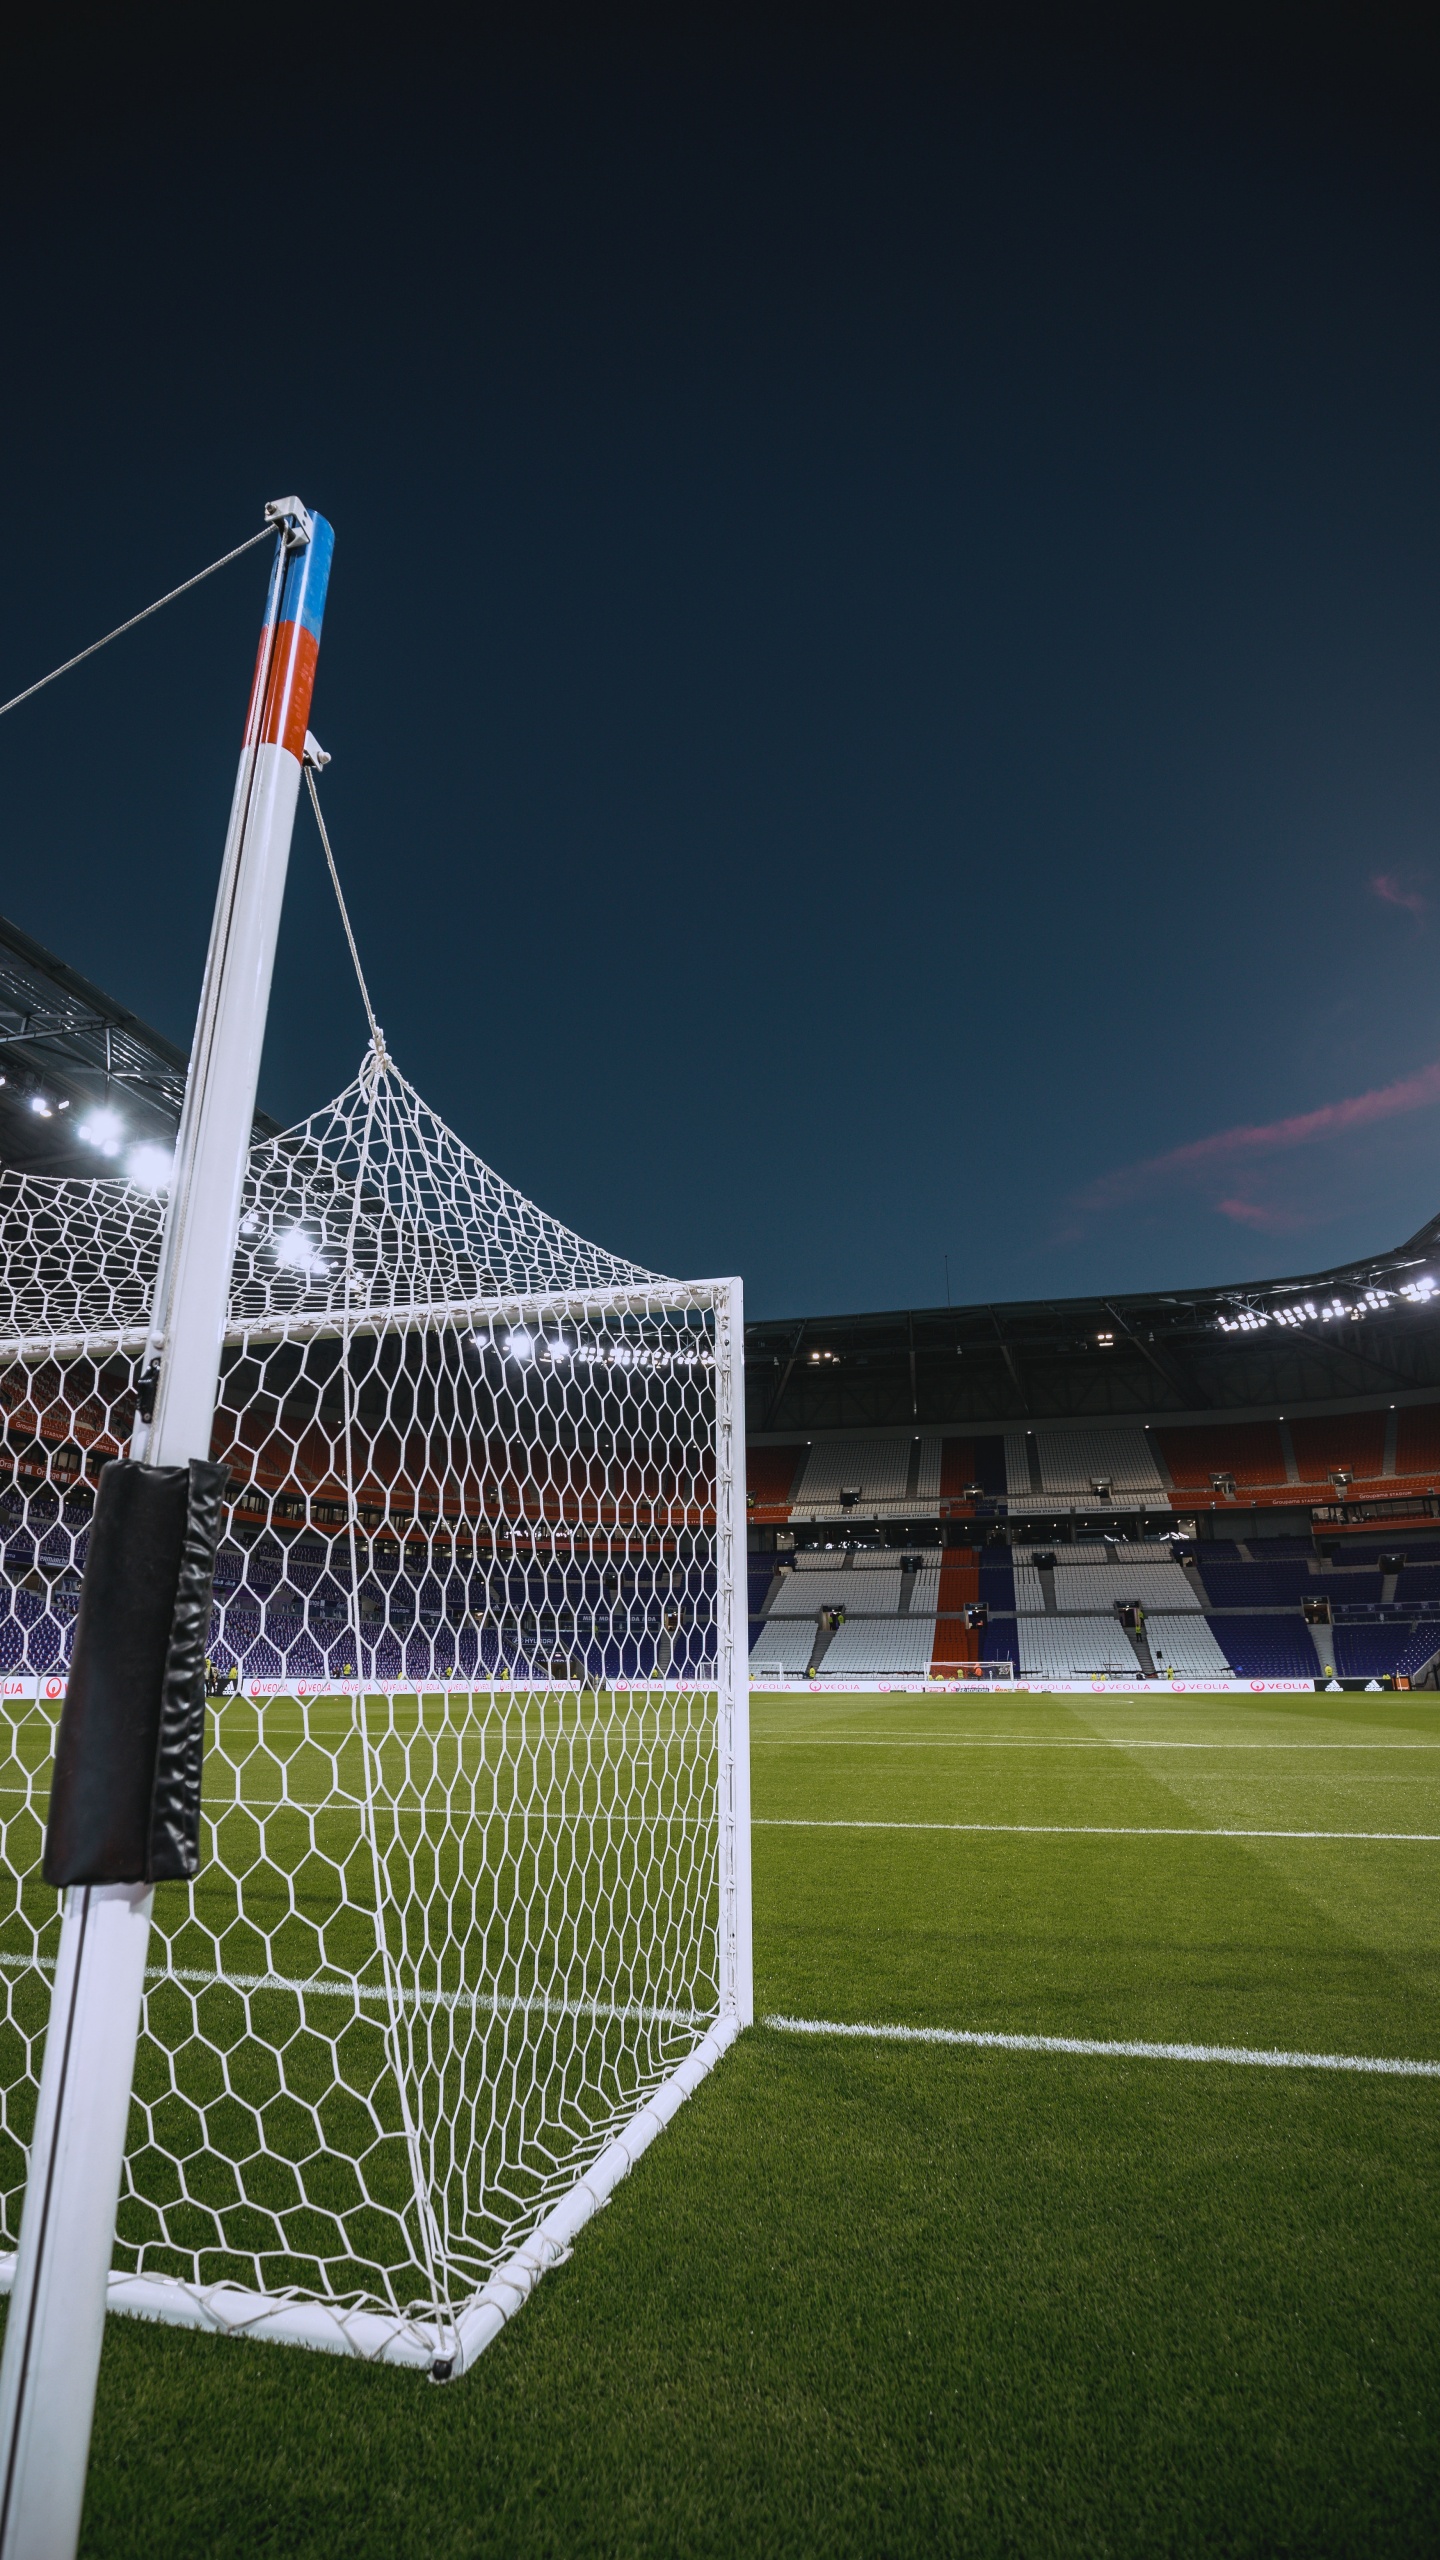 Drapeau Blanc et Rouge Sur le Terrain de Football Pendant la Nuit. Wallpaper in 1440x2560 Resolution